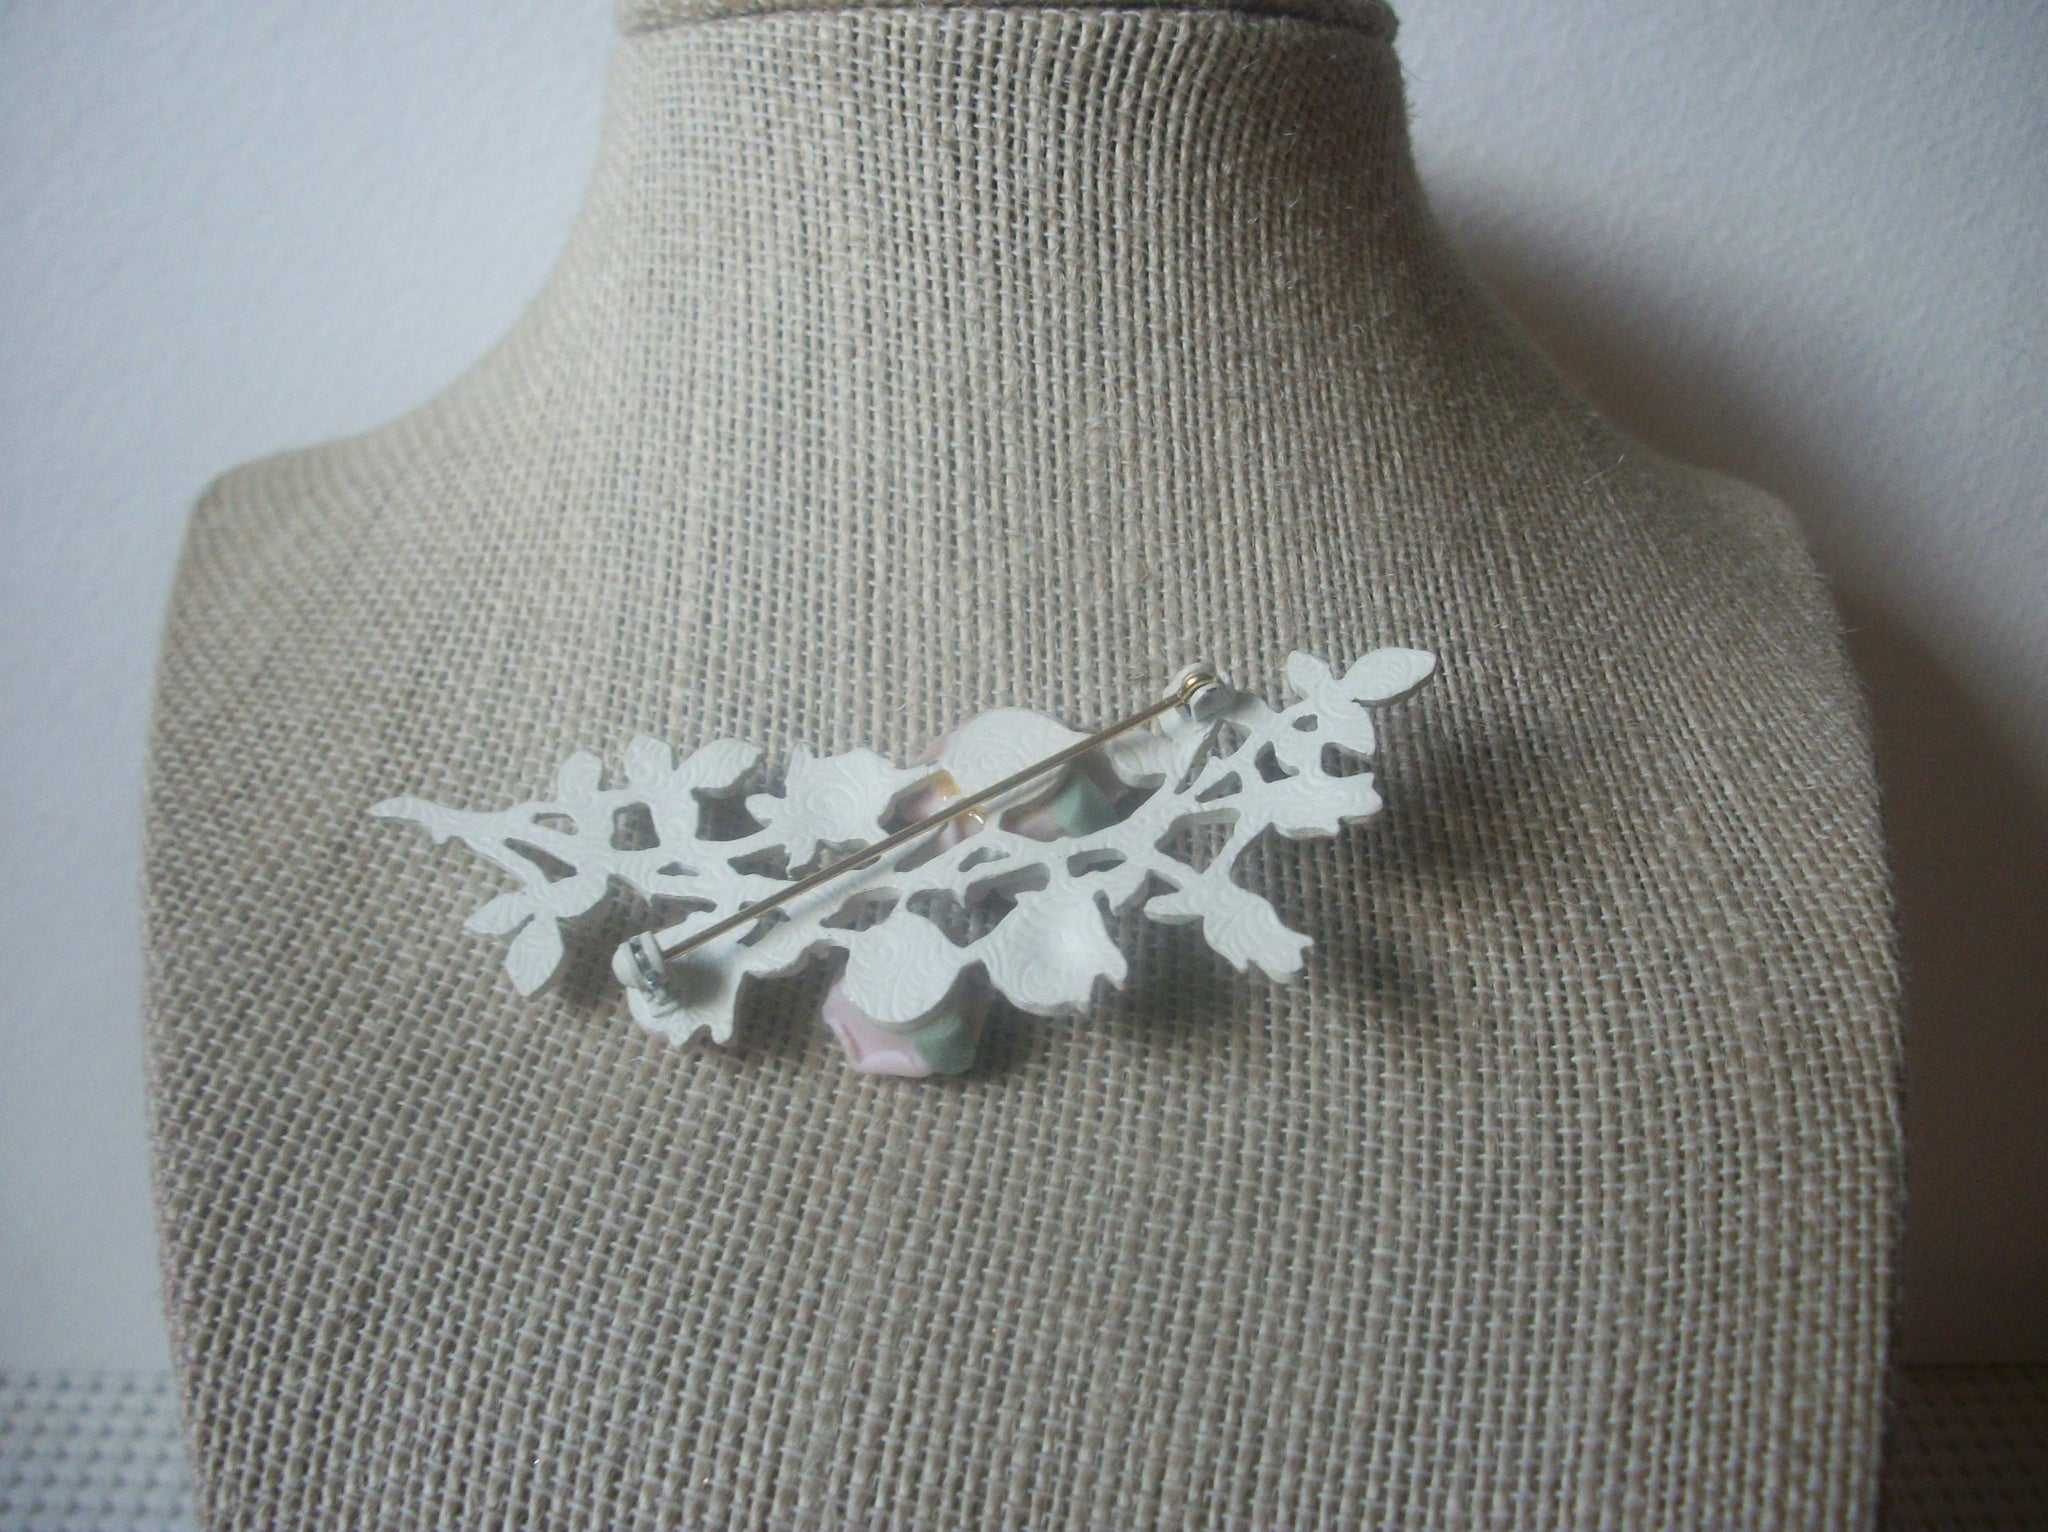 Larger, Vintage Brooch Stick Pin, Porcelain Roses, Pink Flowers, White Metal, Floral, 022021